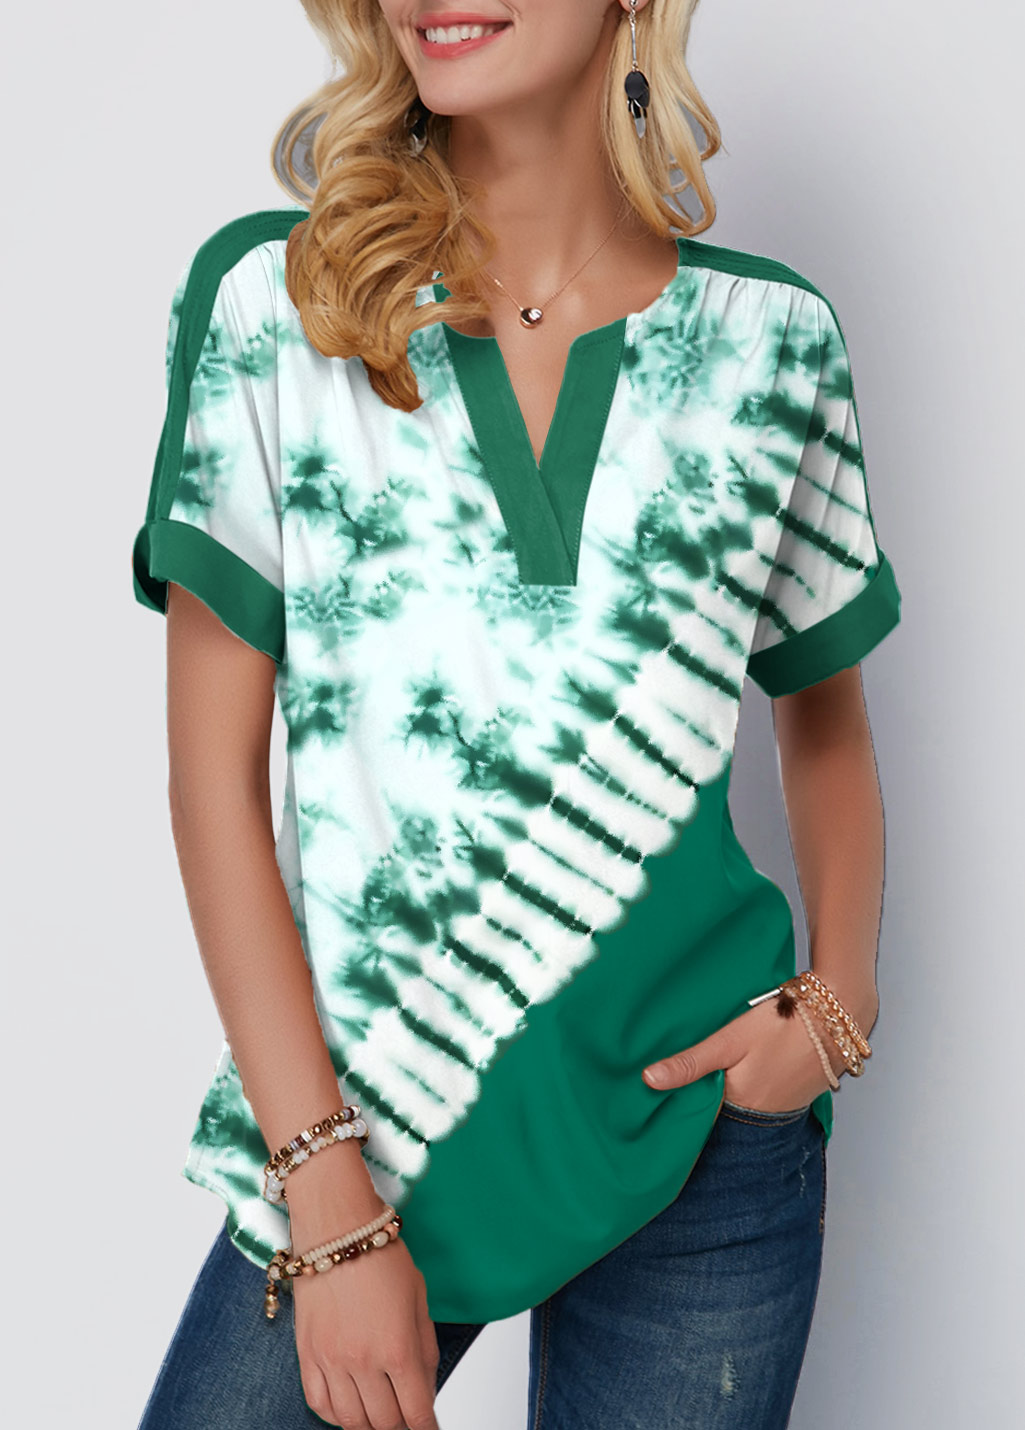 Patricks Day Tie Dye Print Green T Shirt